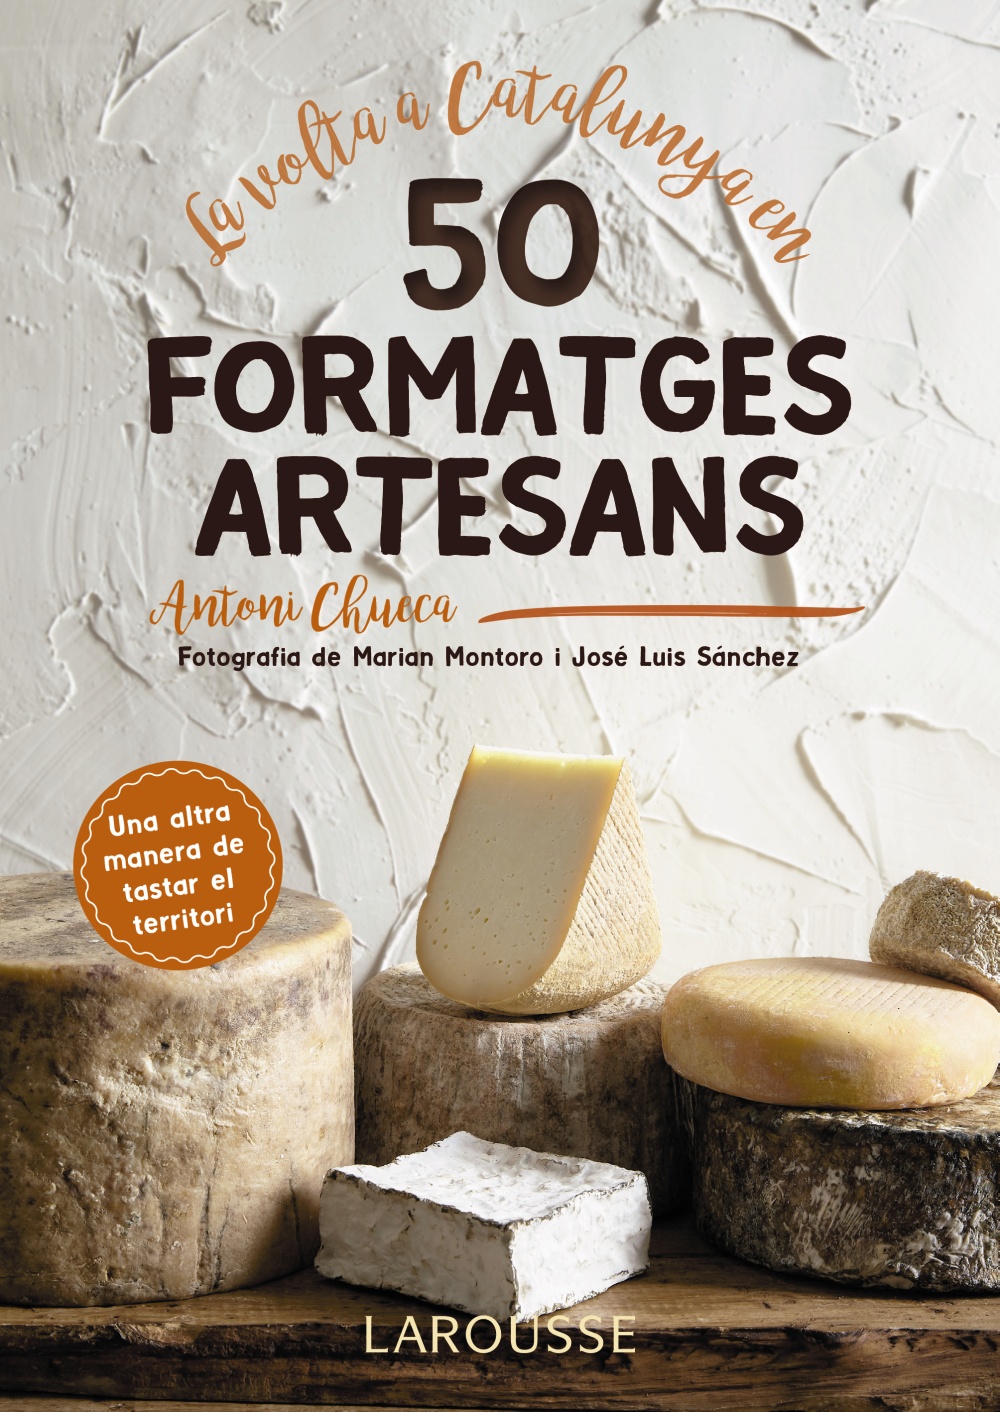 la-volta-a-catalunya-en-50-formatges-artesans-1540884336.jpg